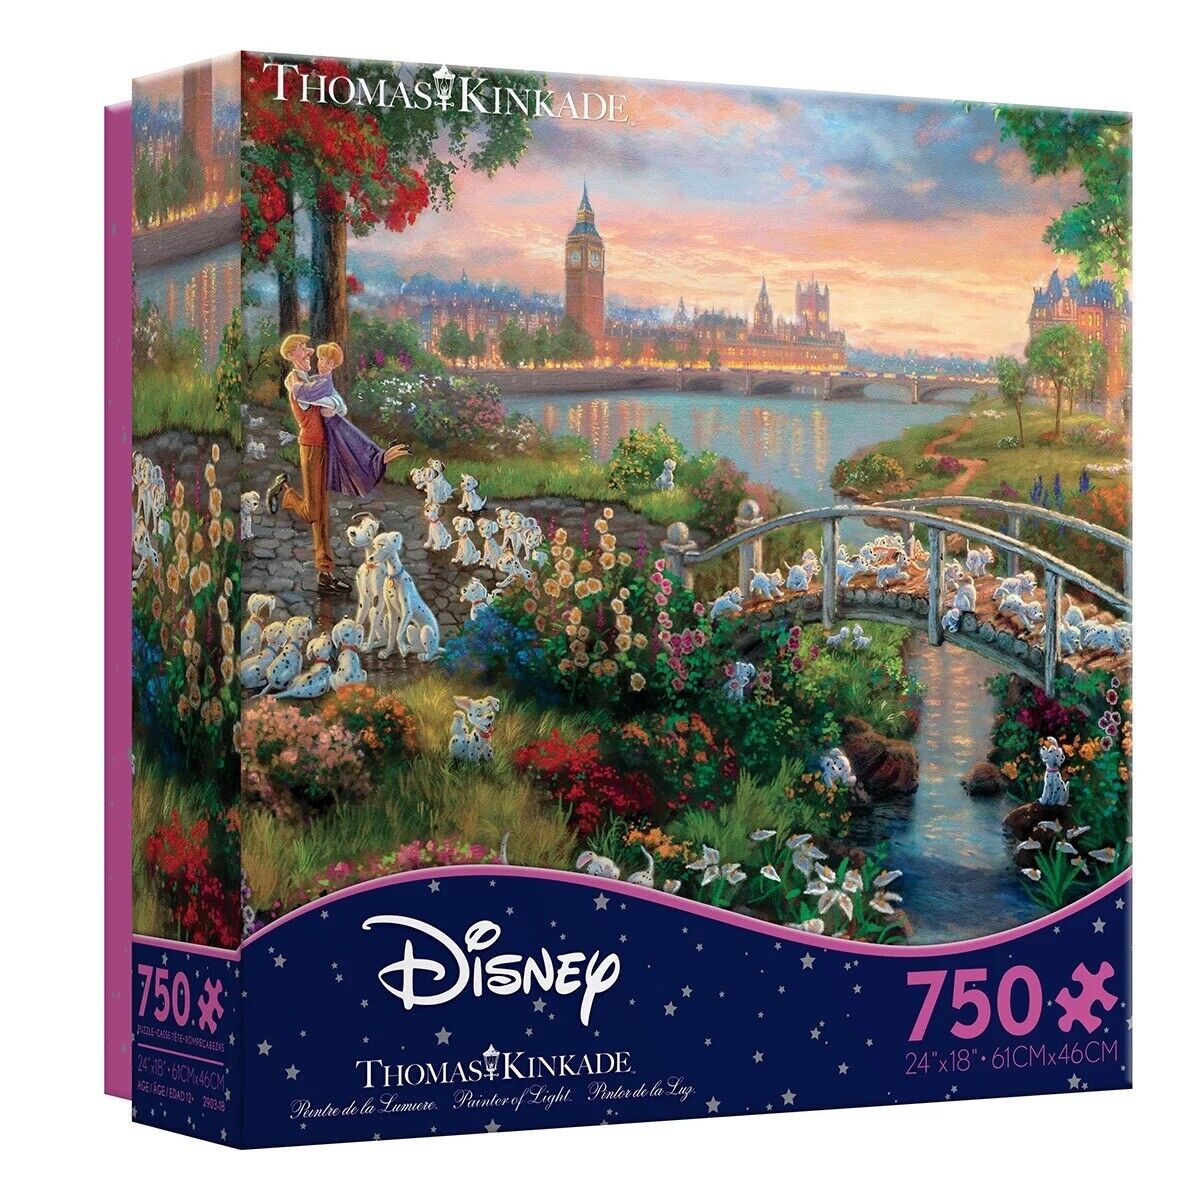 Thomas Kinkade 101 Dalmatians Puzzle 750 pc Jigsaw Disney Ceaco 24x18